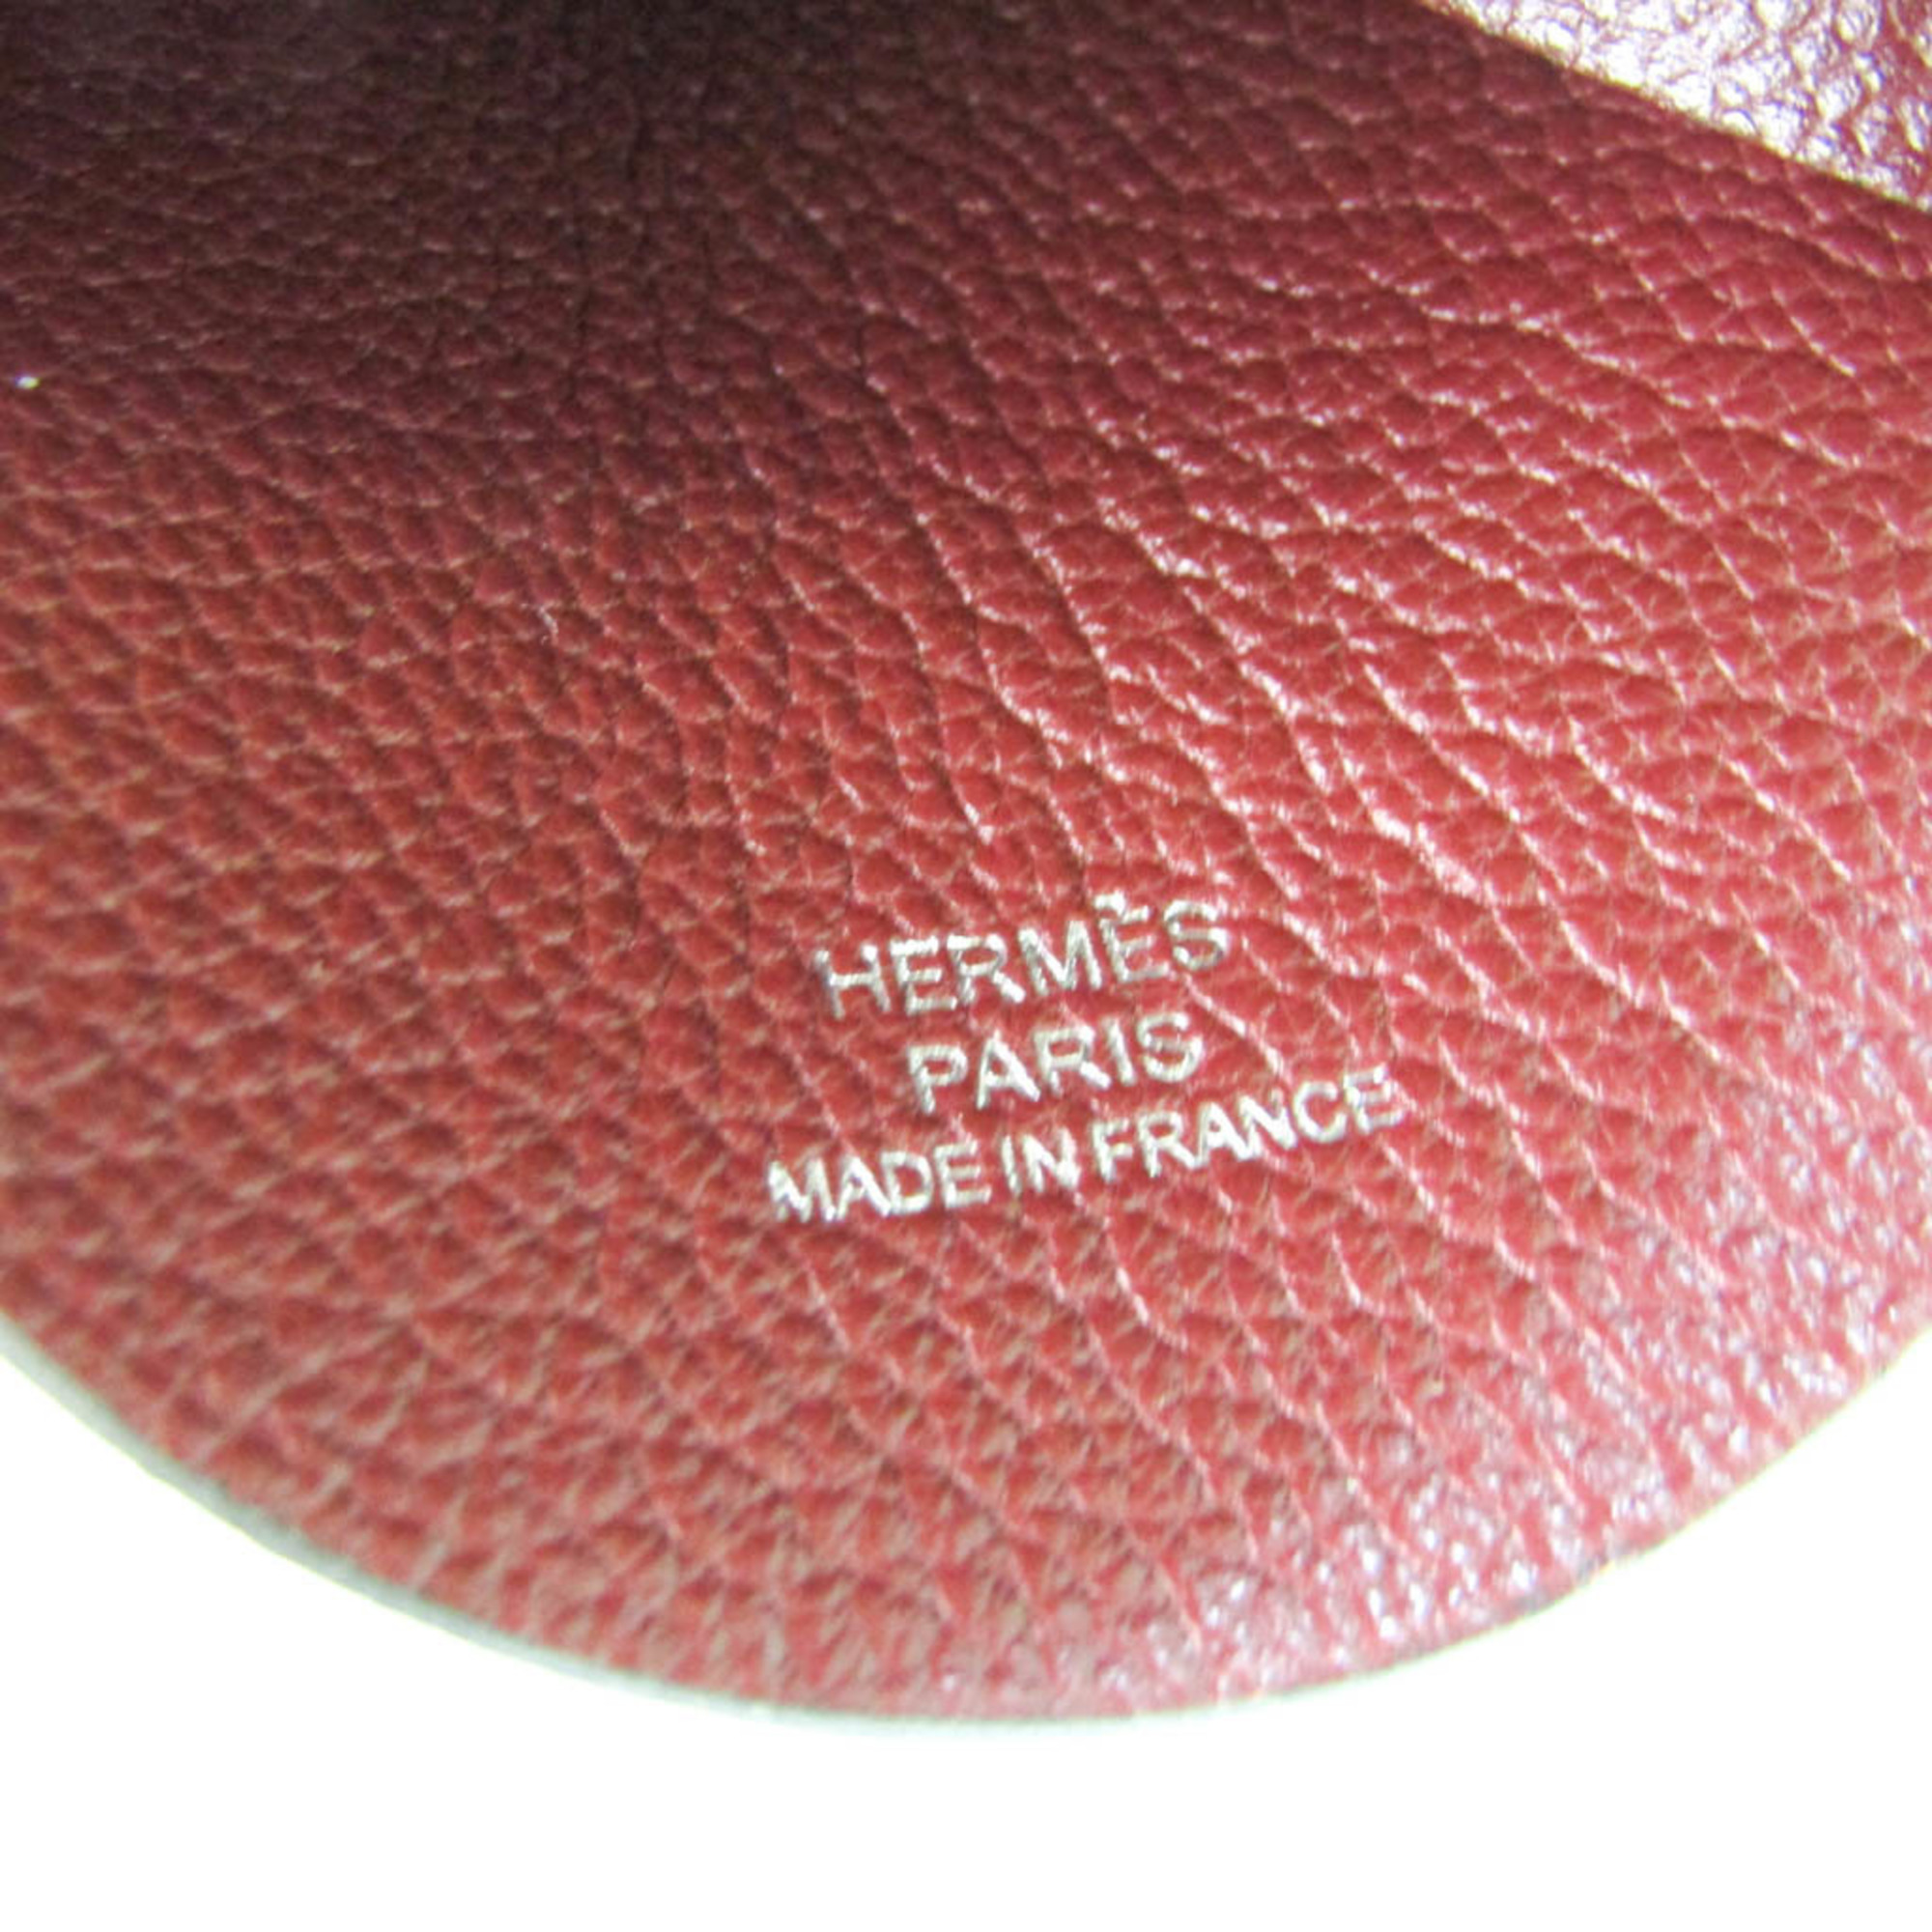 Hermes Miroir Pendant Leather Women,Men Casual Necklace (Brown)